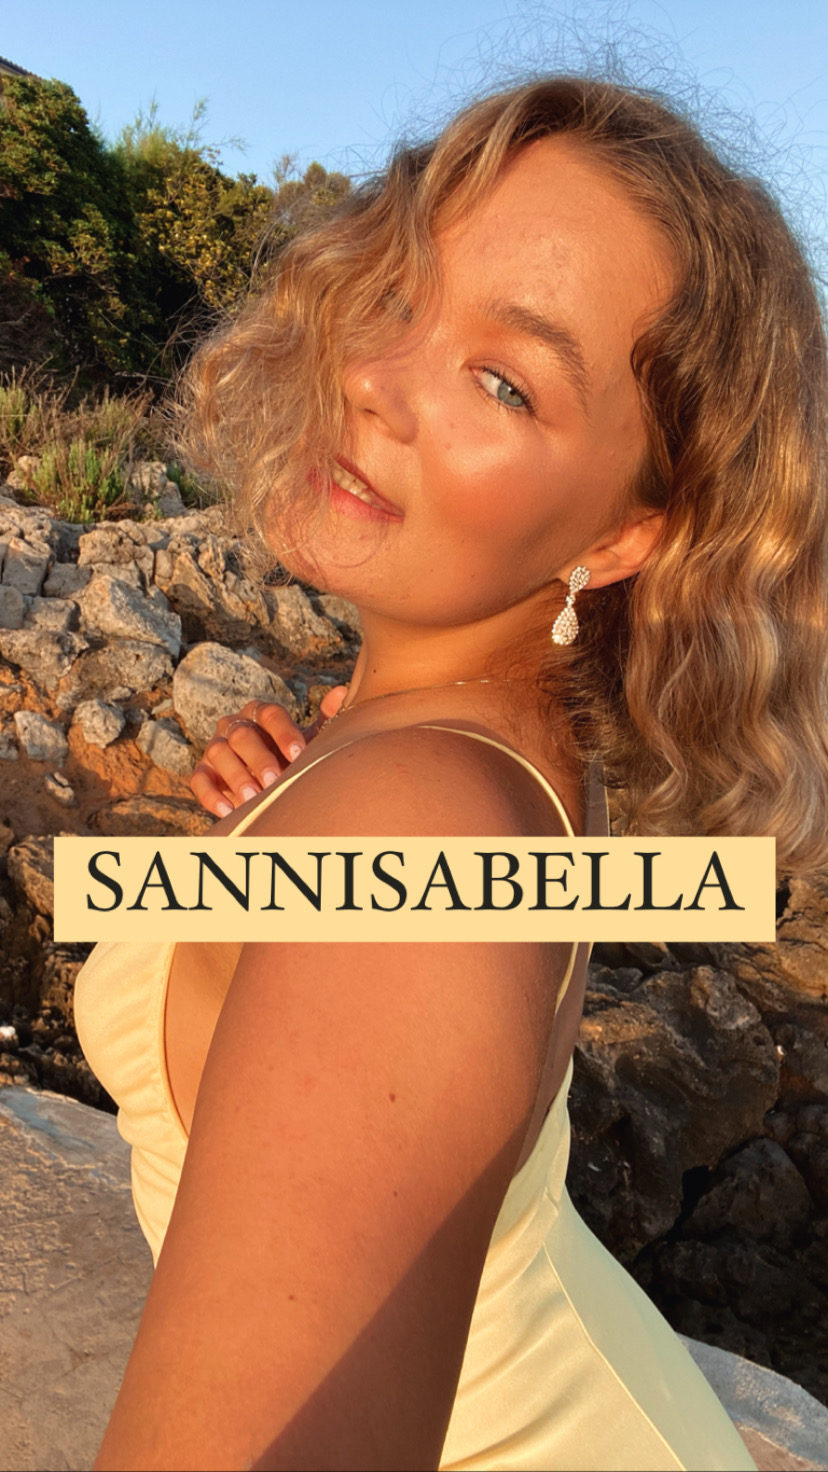 SannIsabella